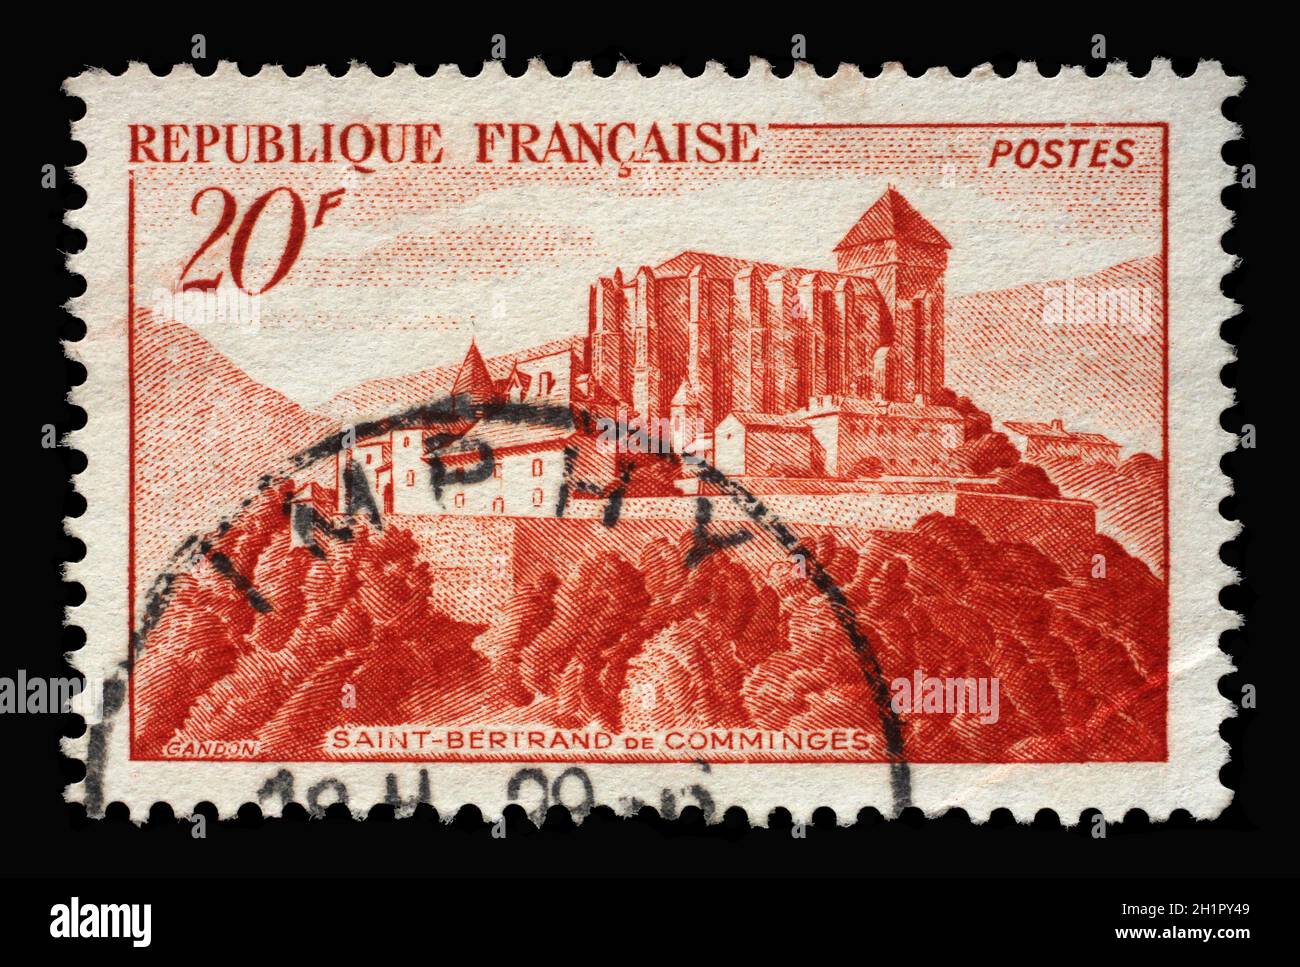 Le timbre imprimé en France montre la cathédrale Saint-Bertrand-de-Comminges, ancienne cathédrale catholique romaine de Comminges, haute-Garonne, vers 1949 Banque D'Images